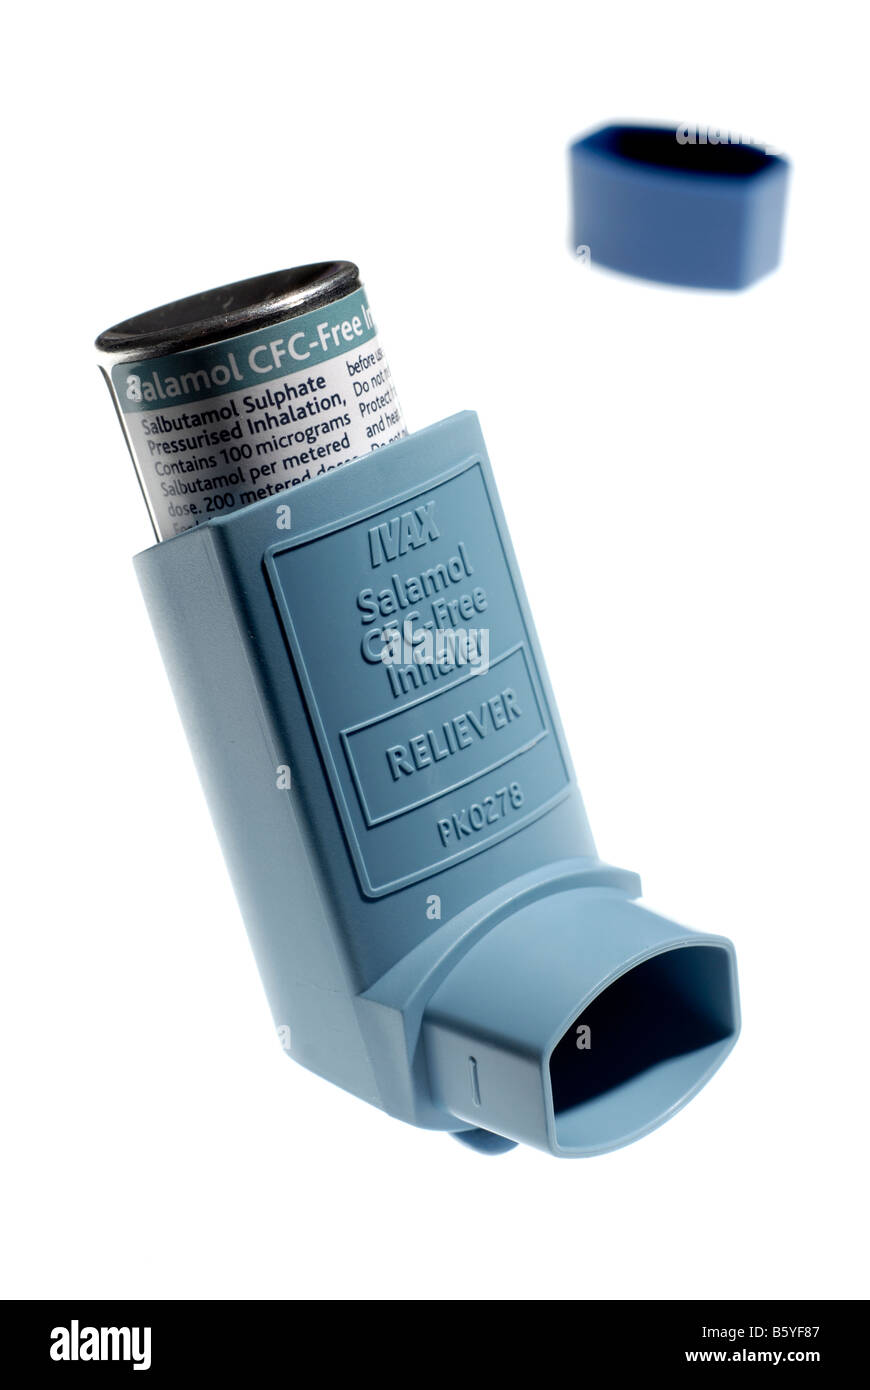 Salamol CFC free inhaler isolated on white Stock Photo